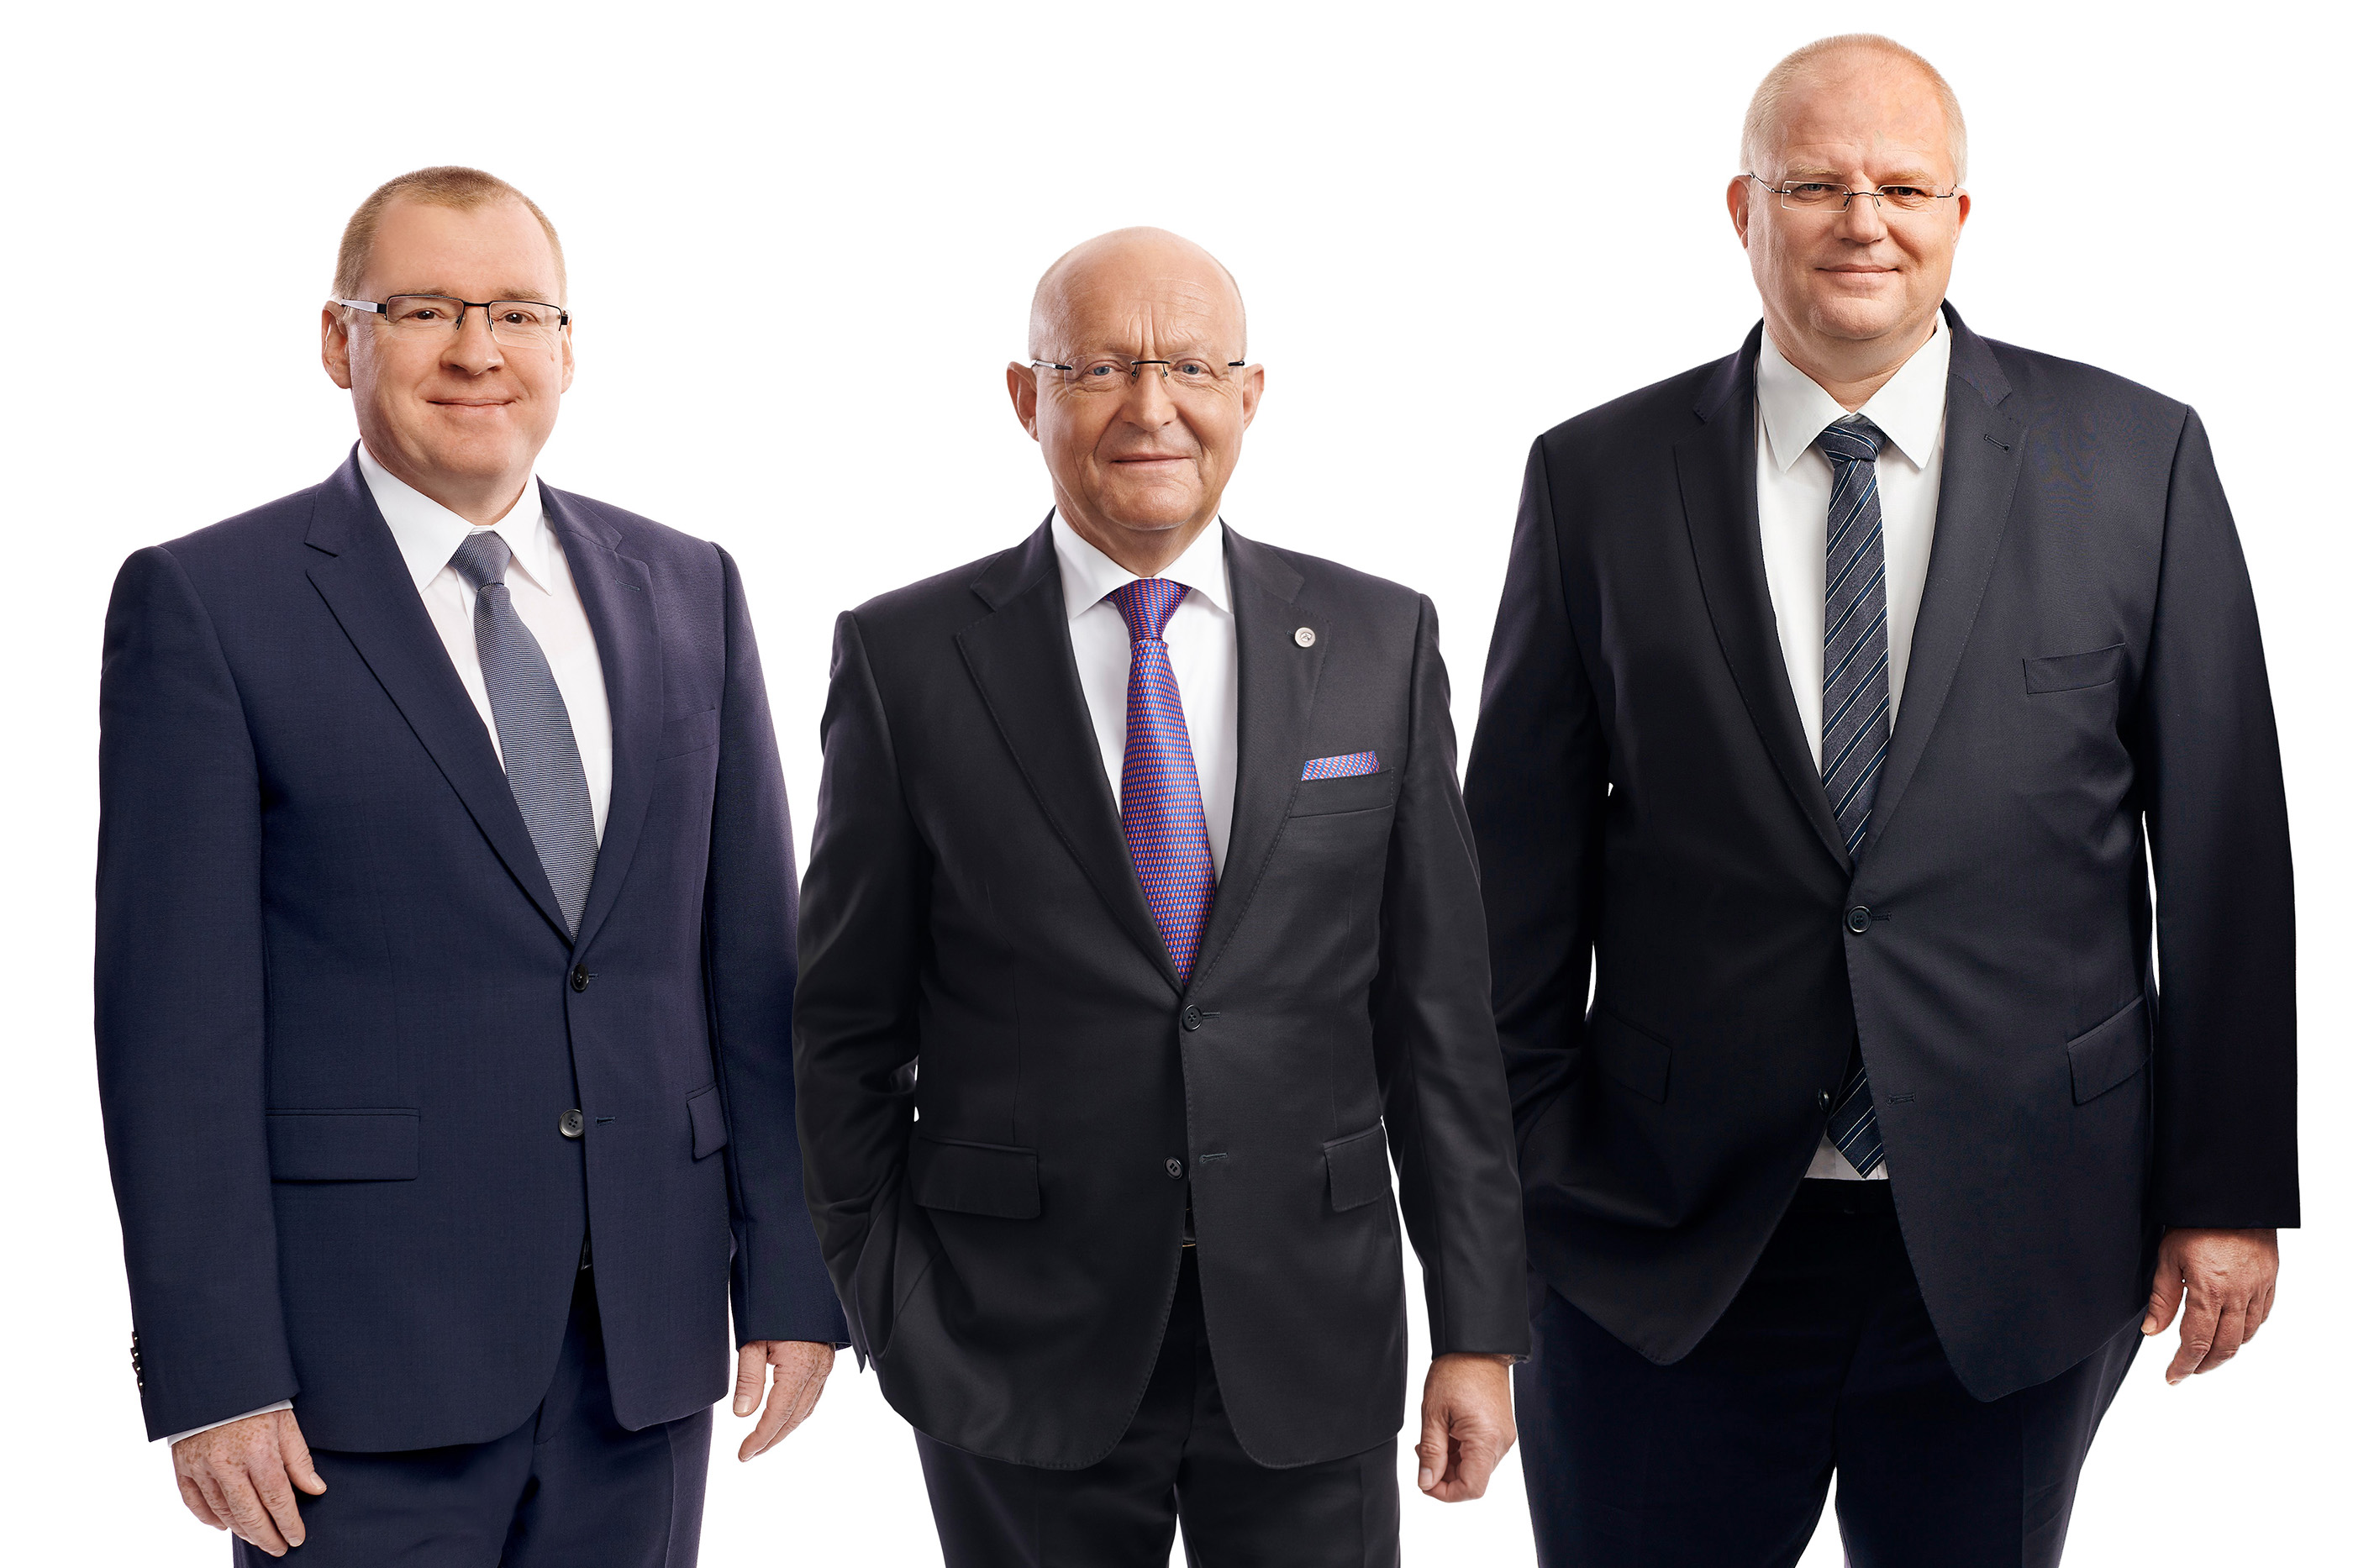 Der Bionorica-Vorstand: Prof. Dr. Michael A. Popp (Bildmitte) zusammen mit Dr. Michael Rödel (links) und Dr. Hanke Wohlers (rechts).